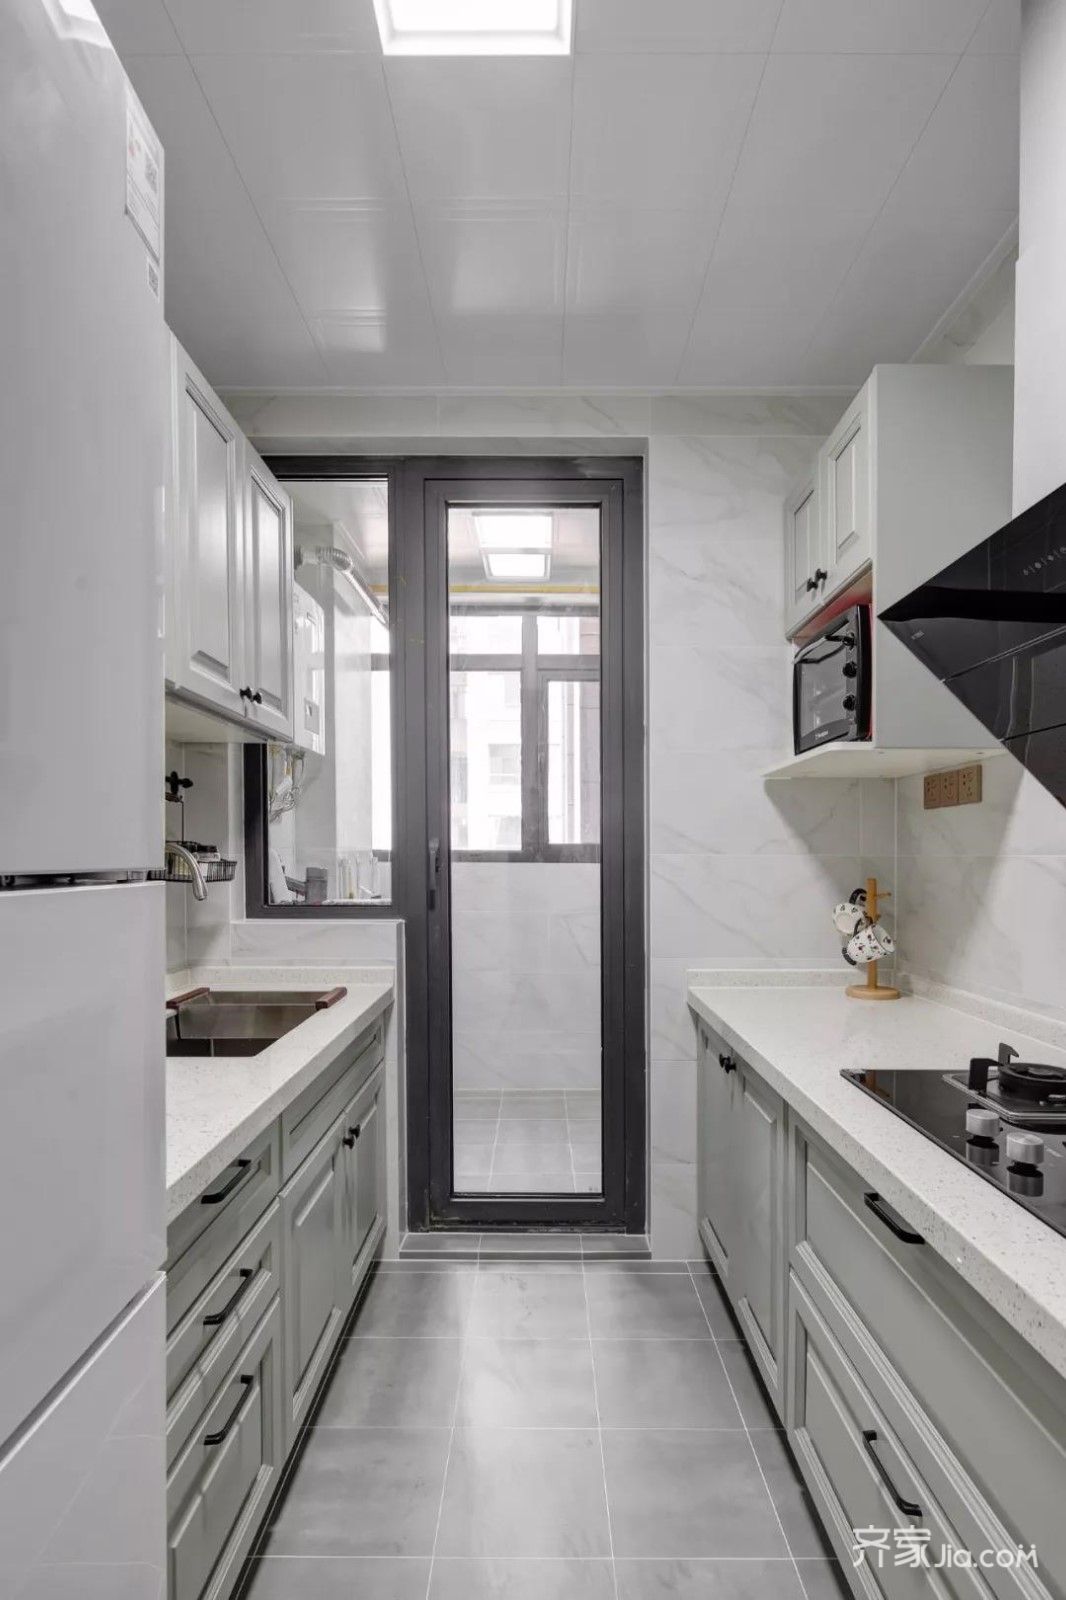 厨房地面铺设灰色哑光砖,墙面铺设大理石纹瓷砖,搭配上灰白色的橱柜